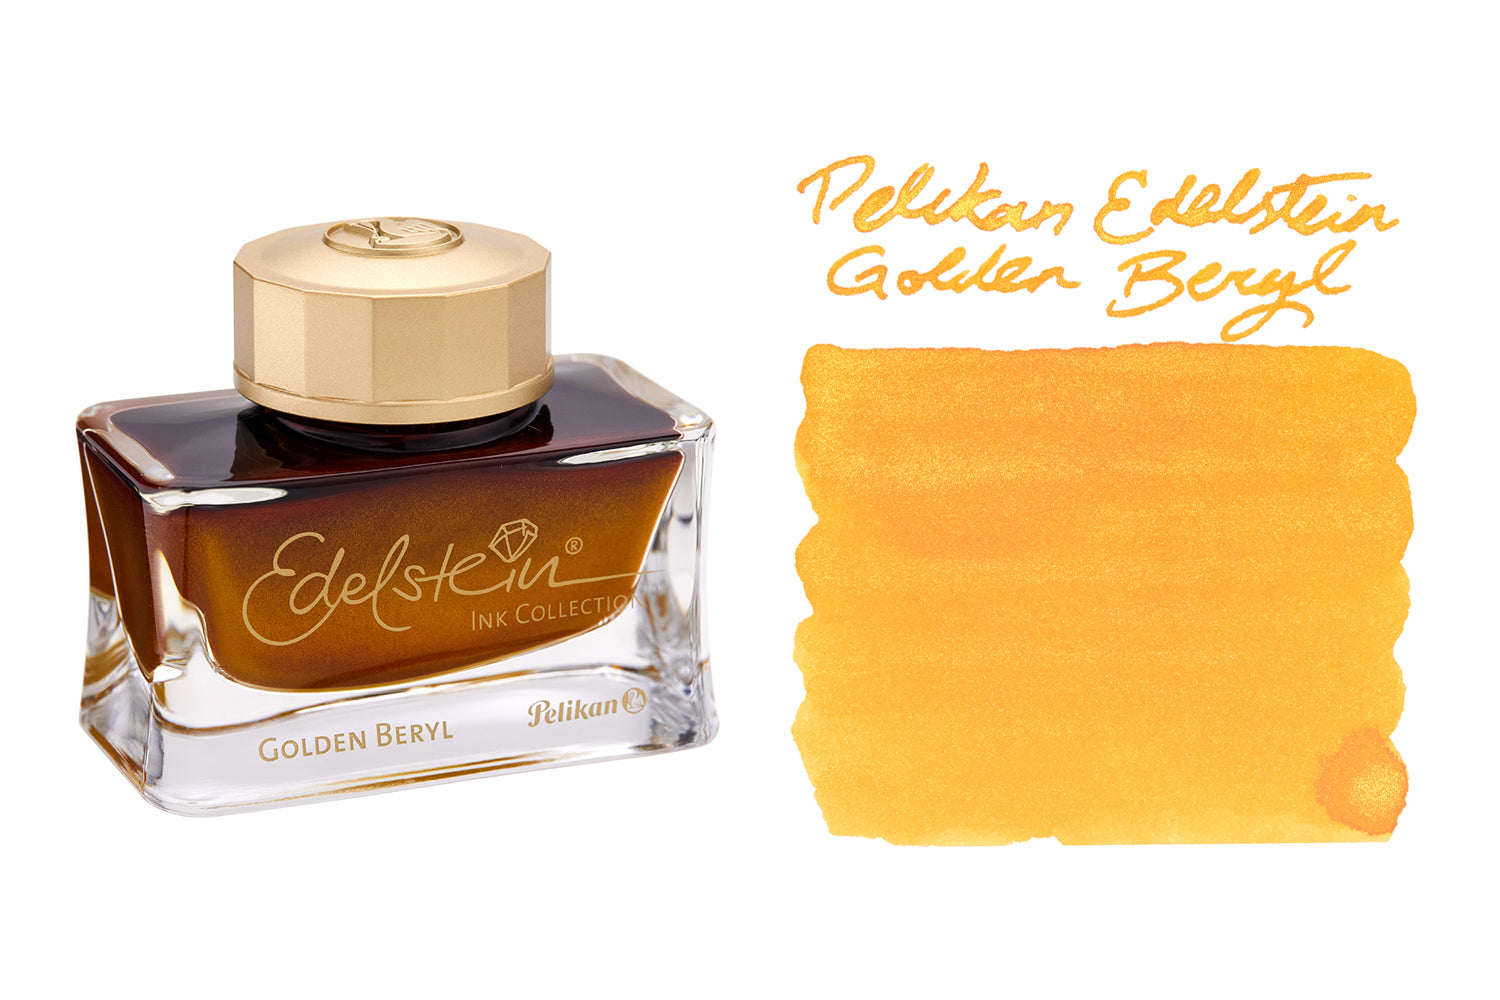 Pelikan Edelstein Golden Beryl Ink